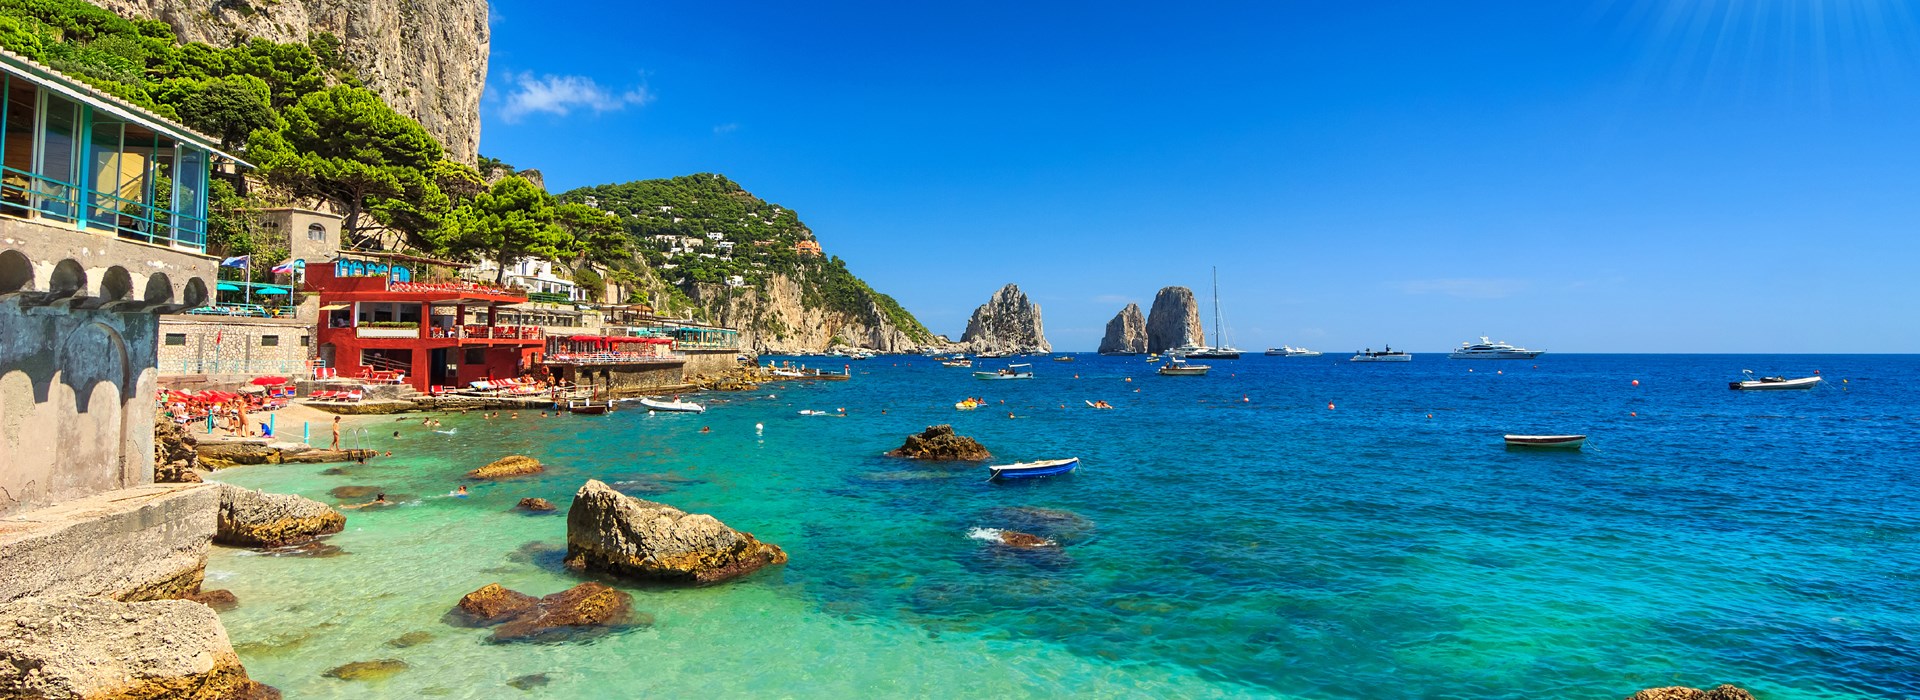 Visiter Capri - Italie